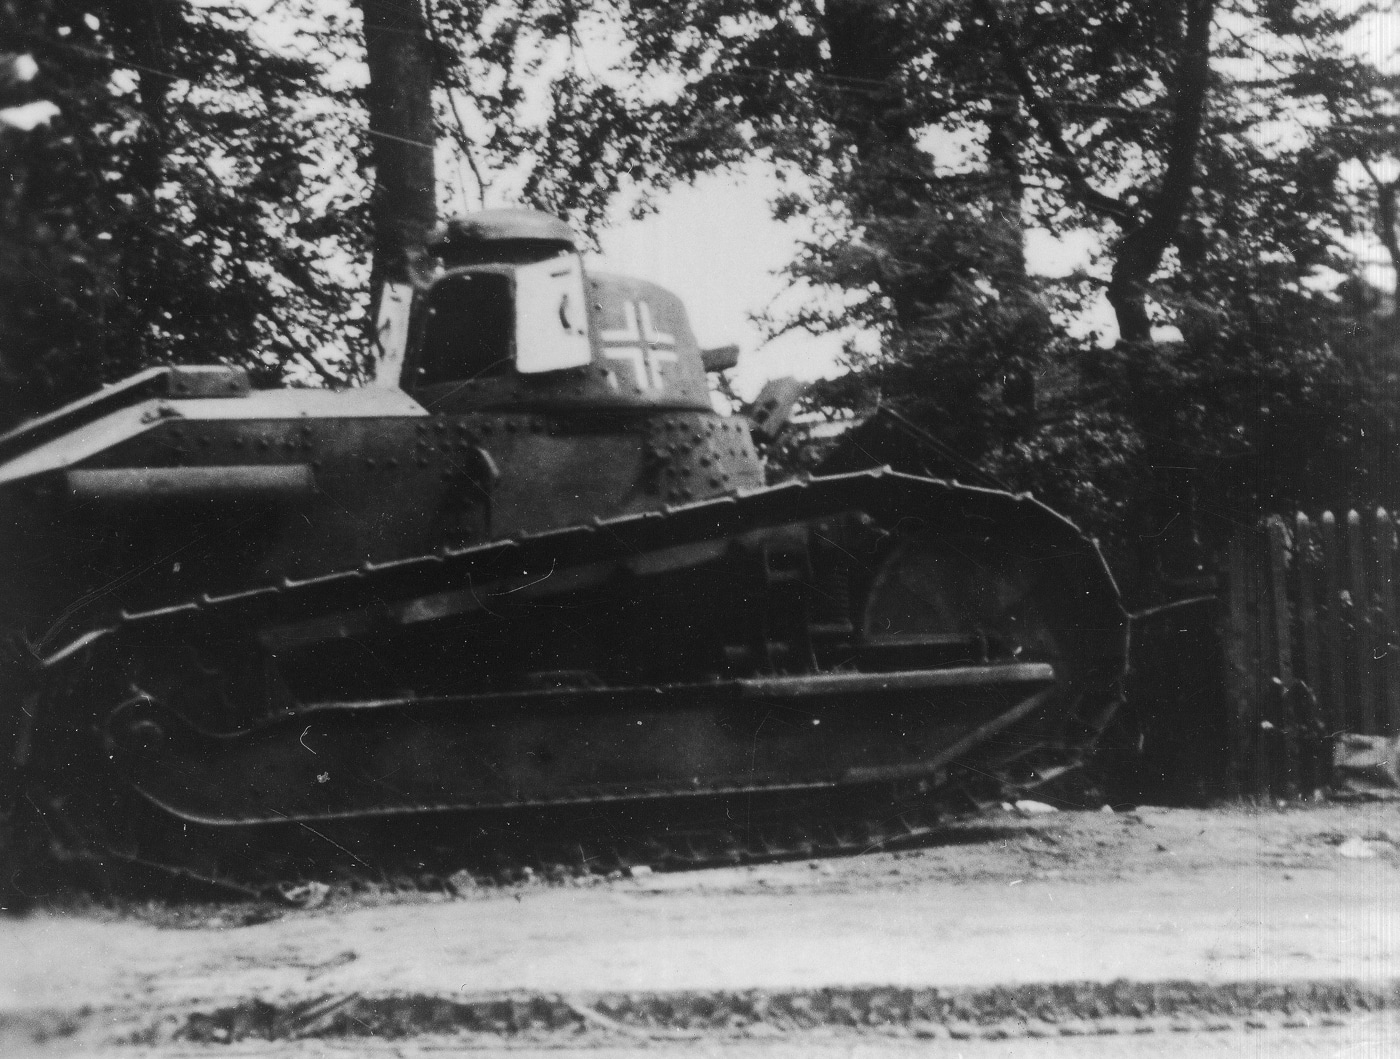 Nazi Germany Renault FT tank in World War II